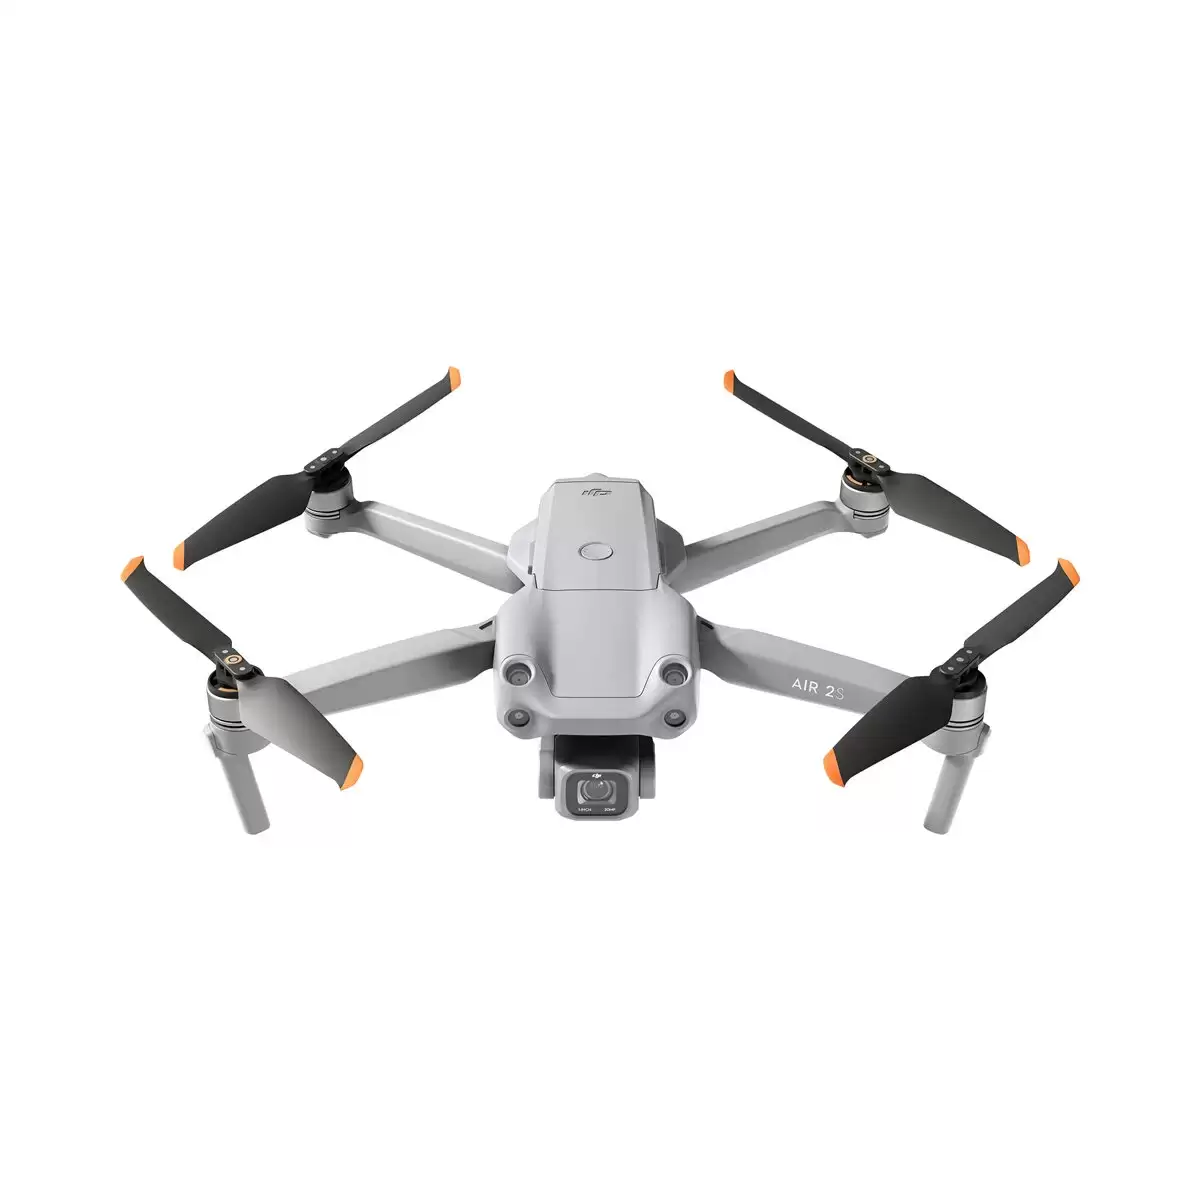 Order In Just $1006 Dji Mavic Air 2s Rc Drone With This Coupon At Banggood